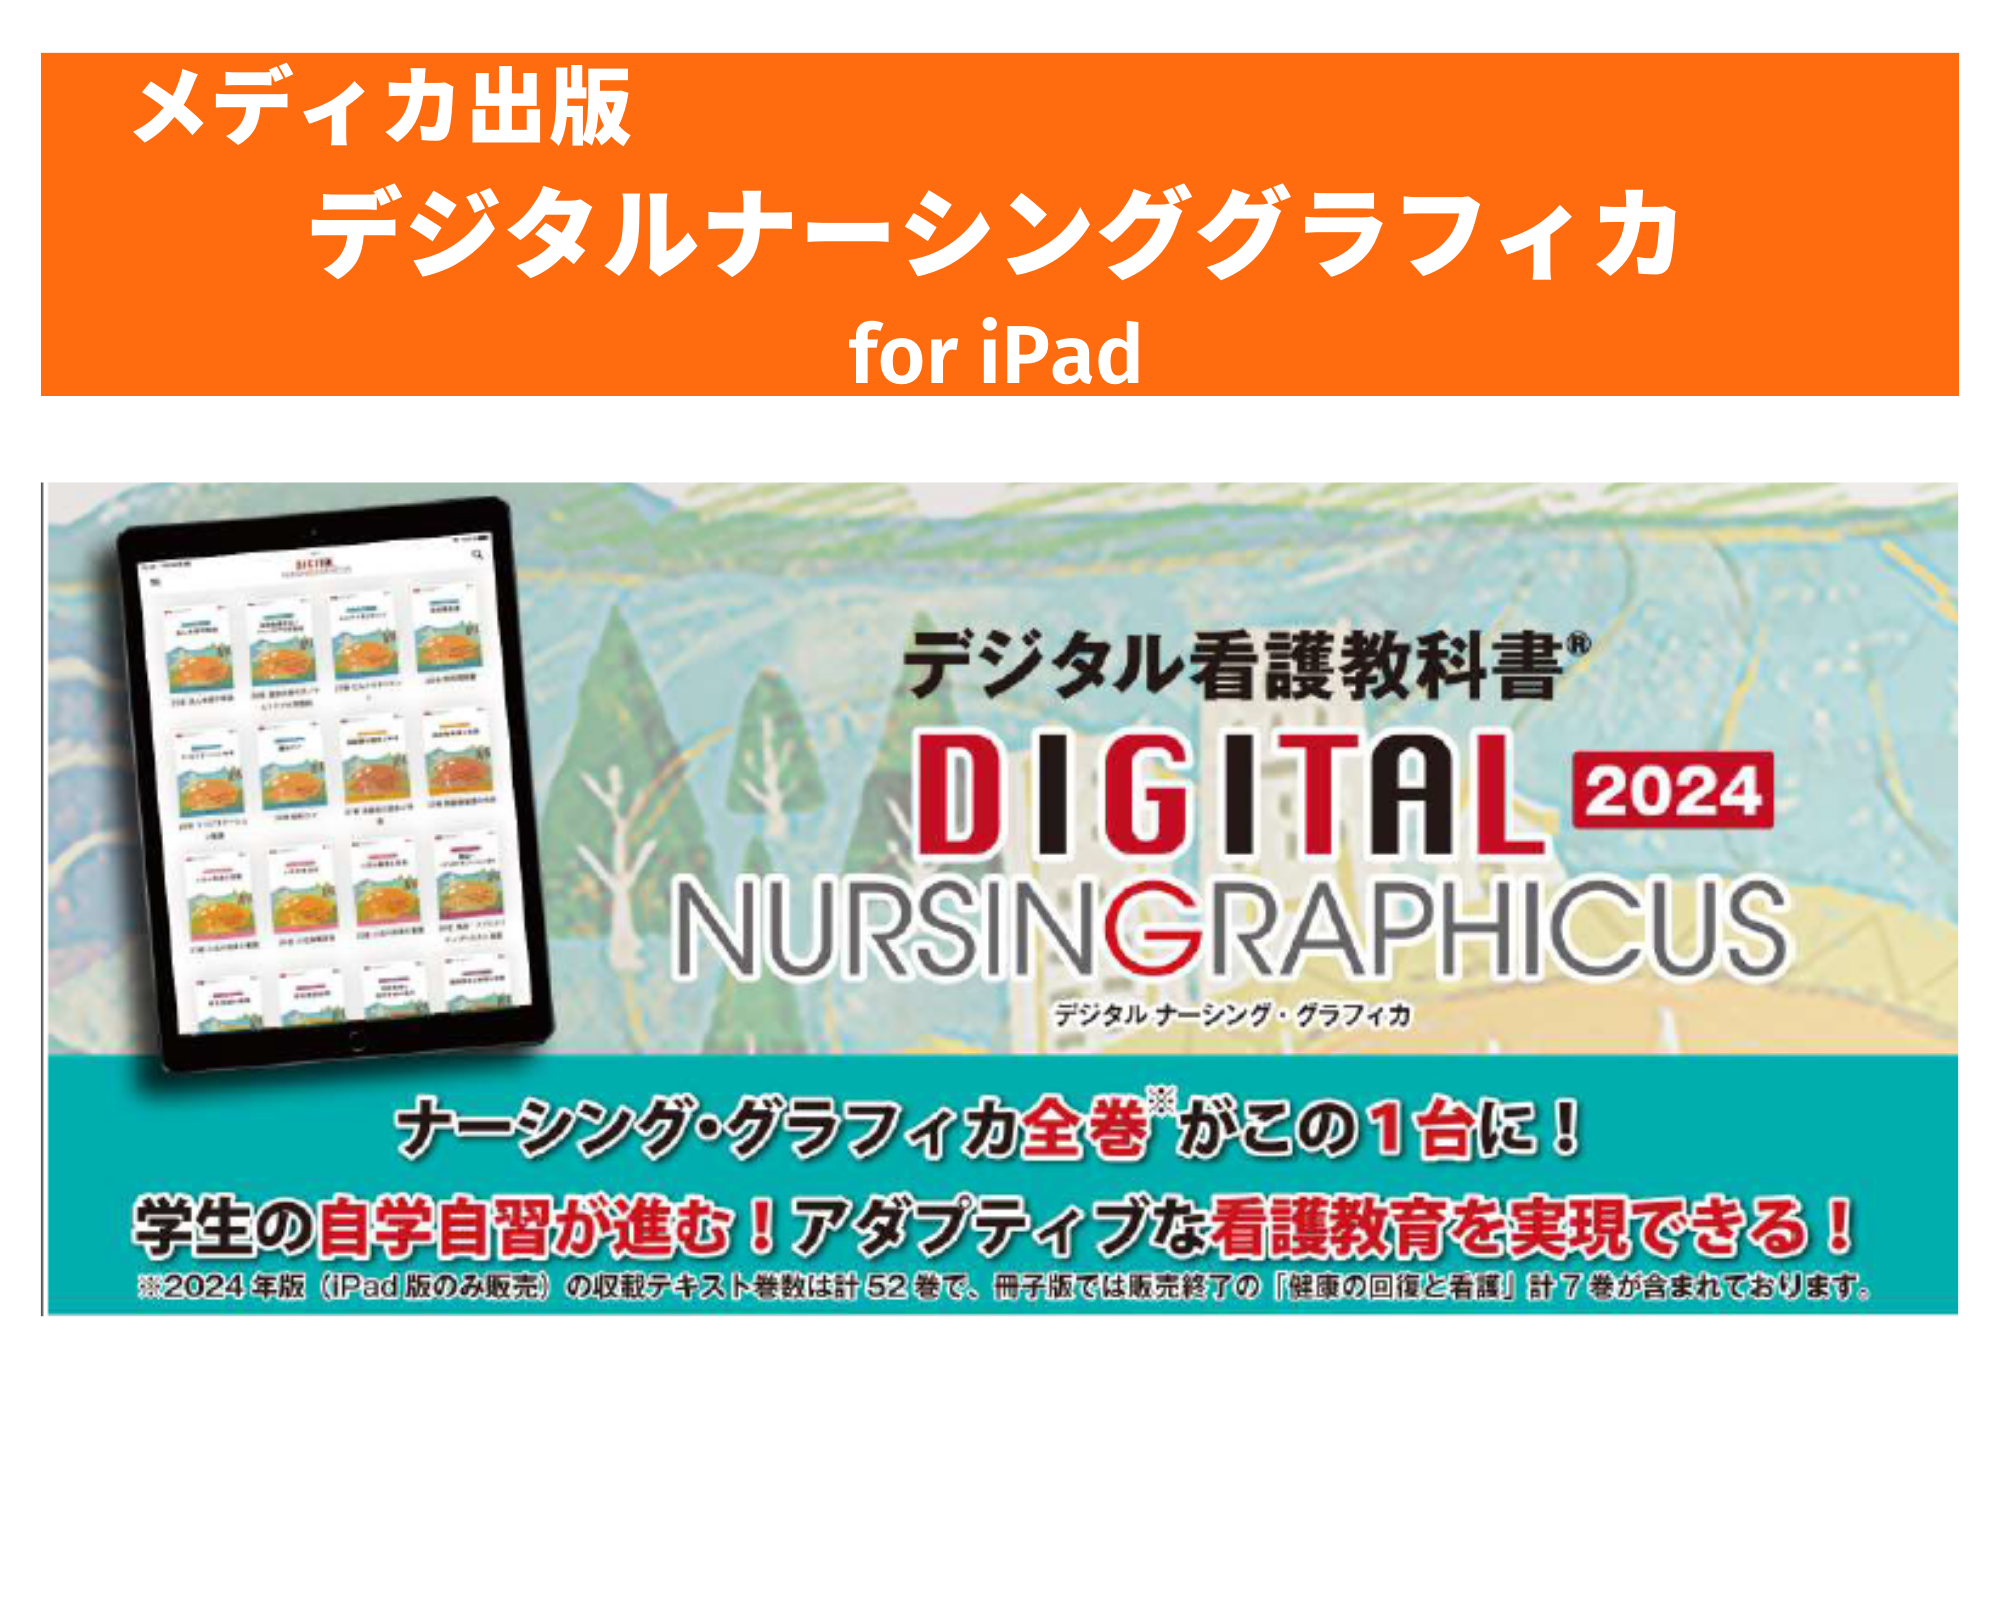 デジタルナーシング・グラフィカ デジタル看護教科書 iPad専用アプリ 